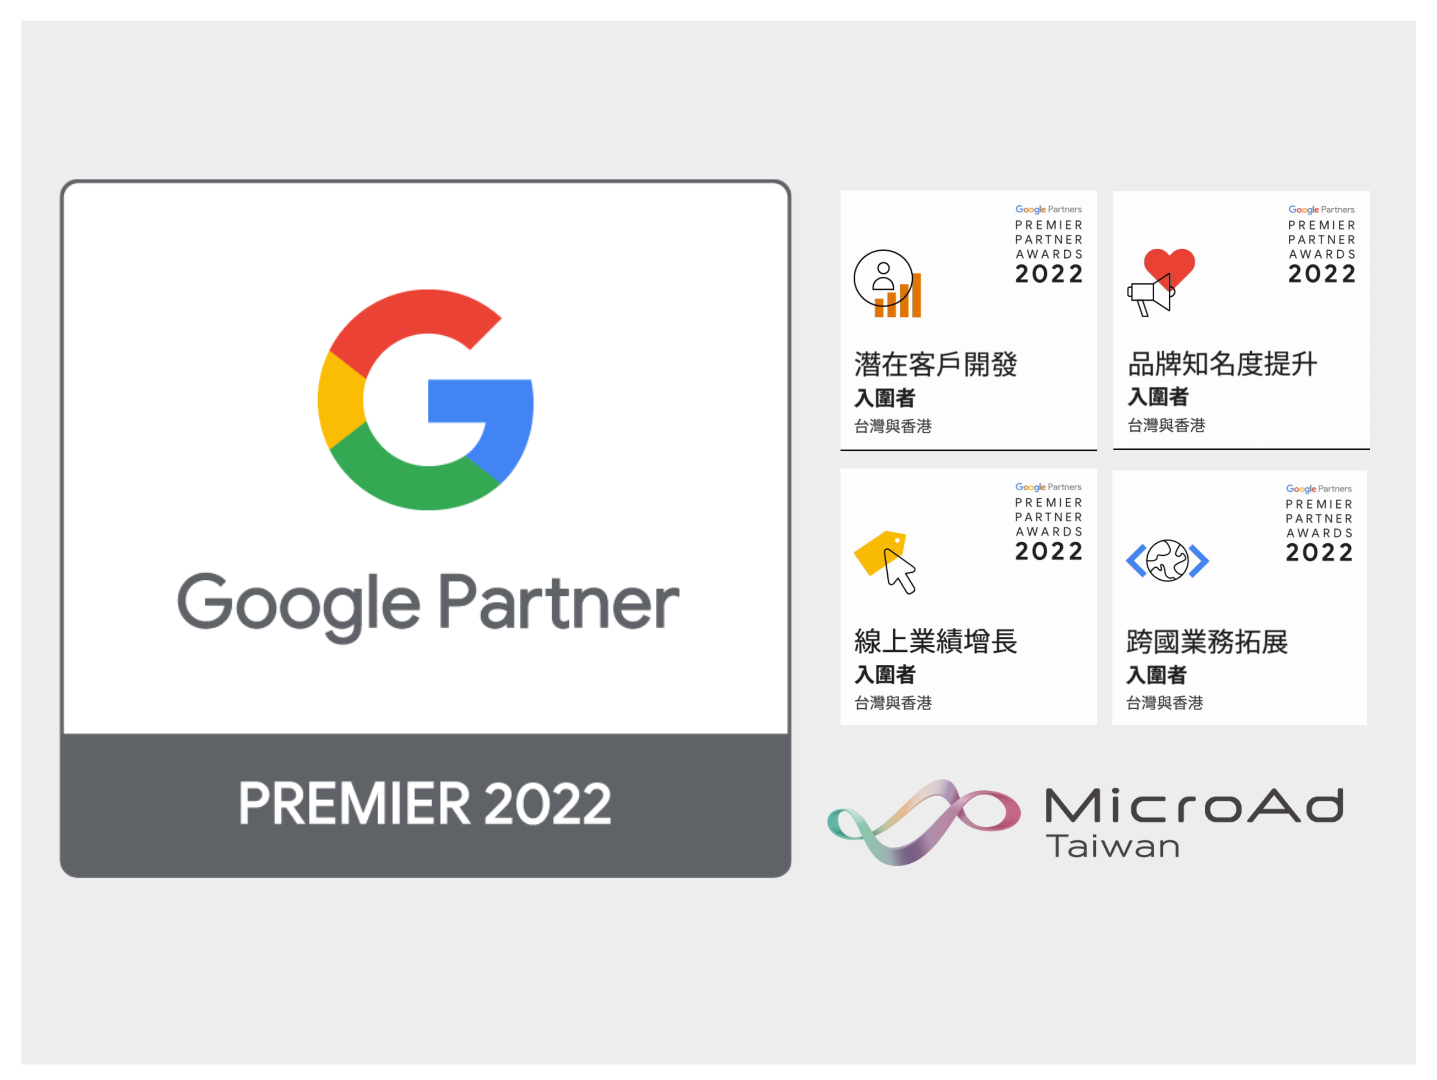 快訊！台灣微告入圍 Google Ads 2022 年菁英合作夥伴大獎